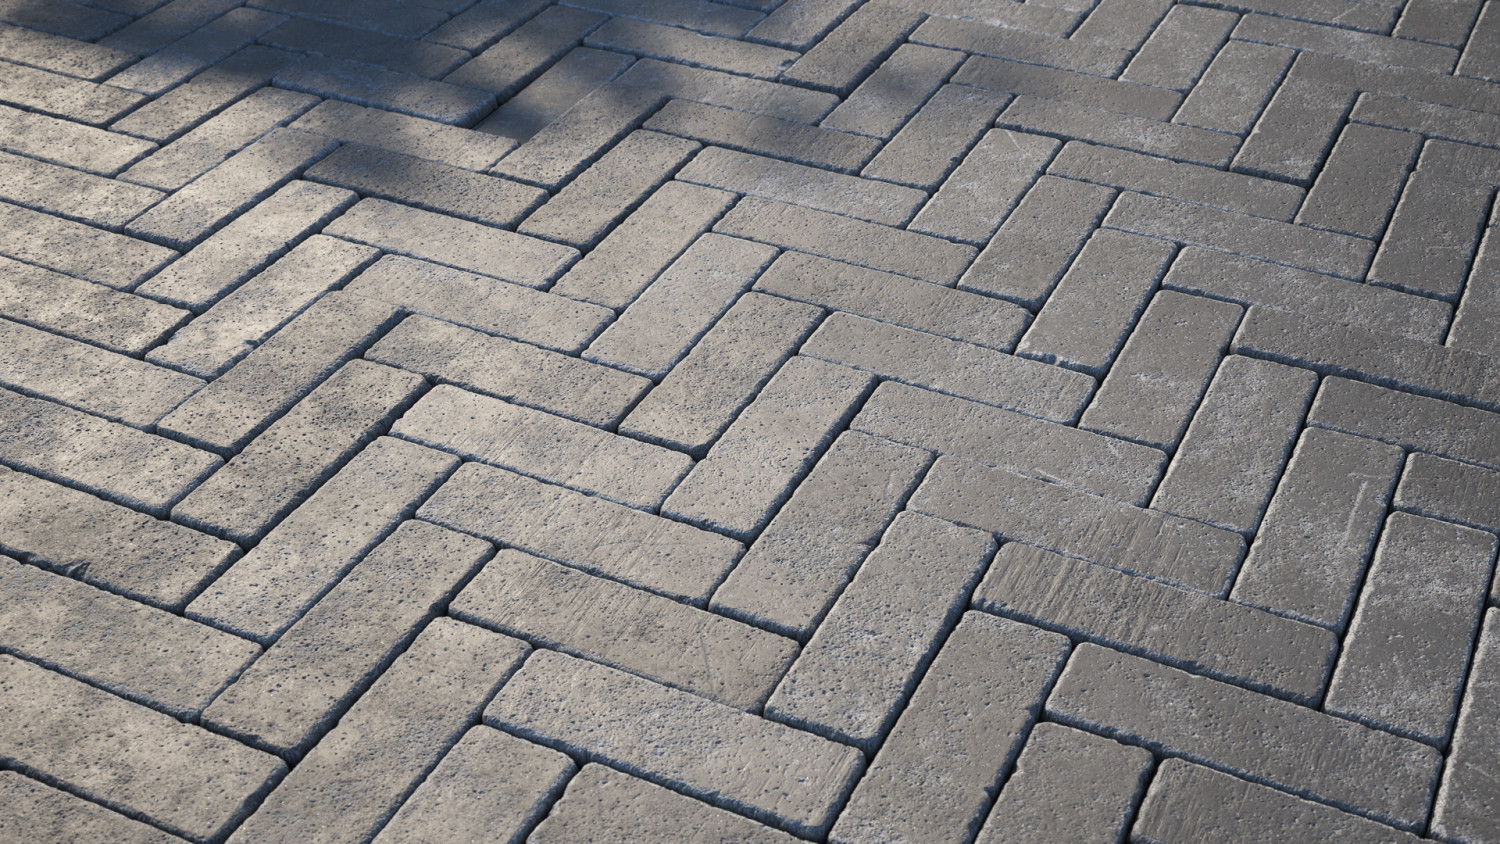 Dark brick walk texture